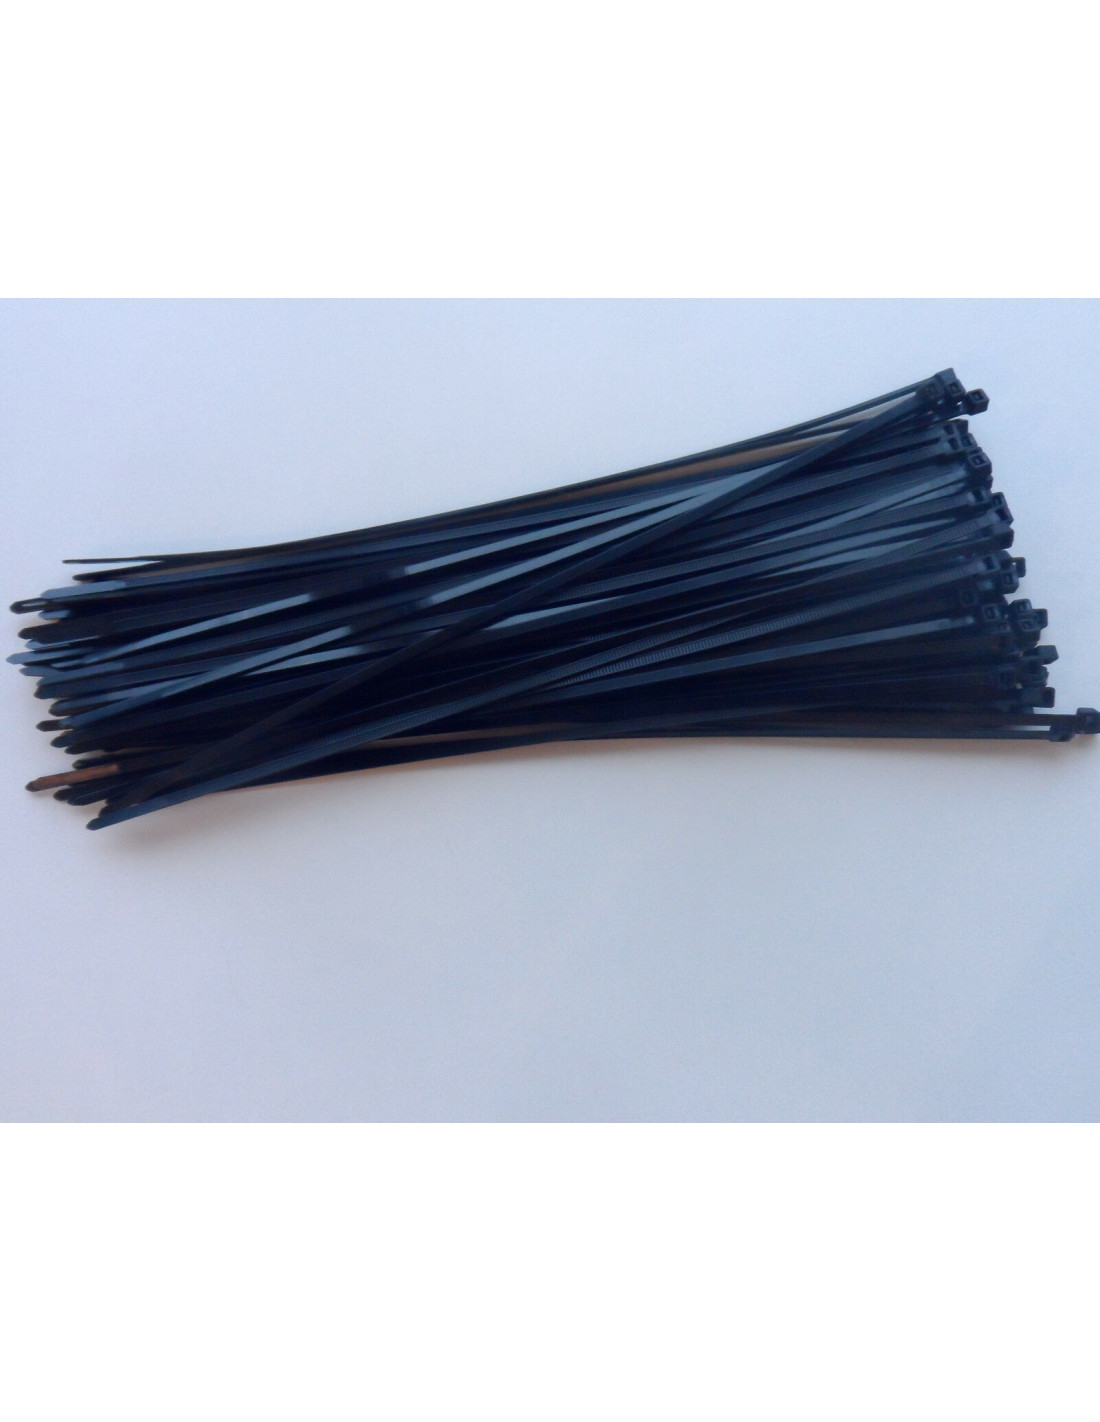 Collier de Serrage Rilsan Plastic Noir Pm 10 cm x 100 units